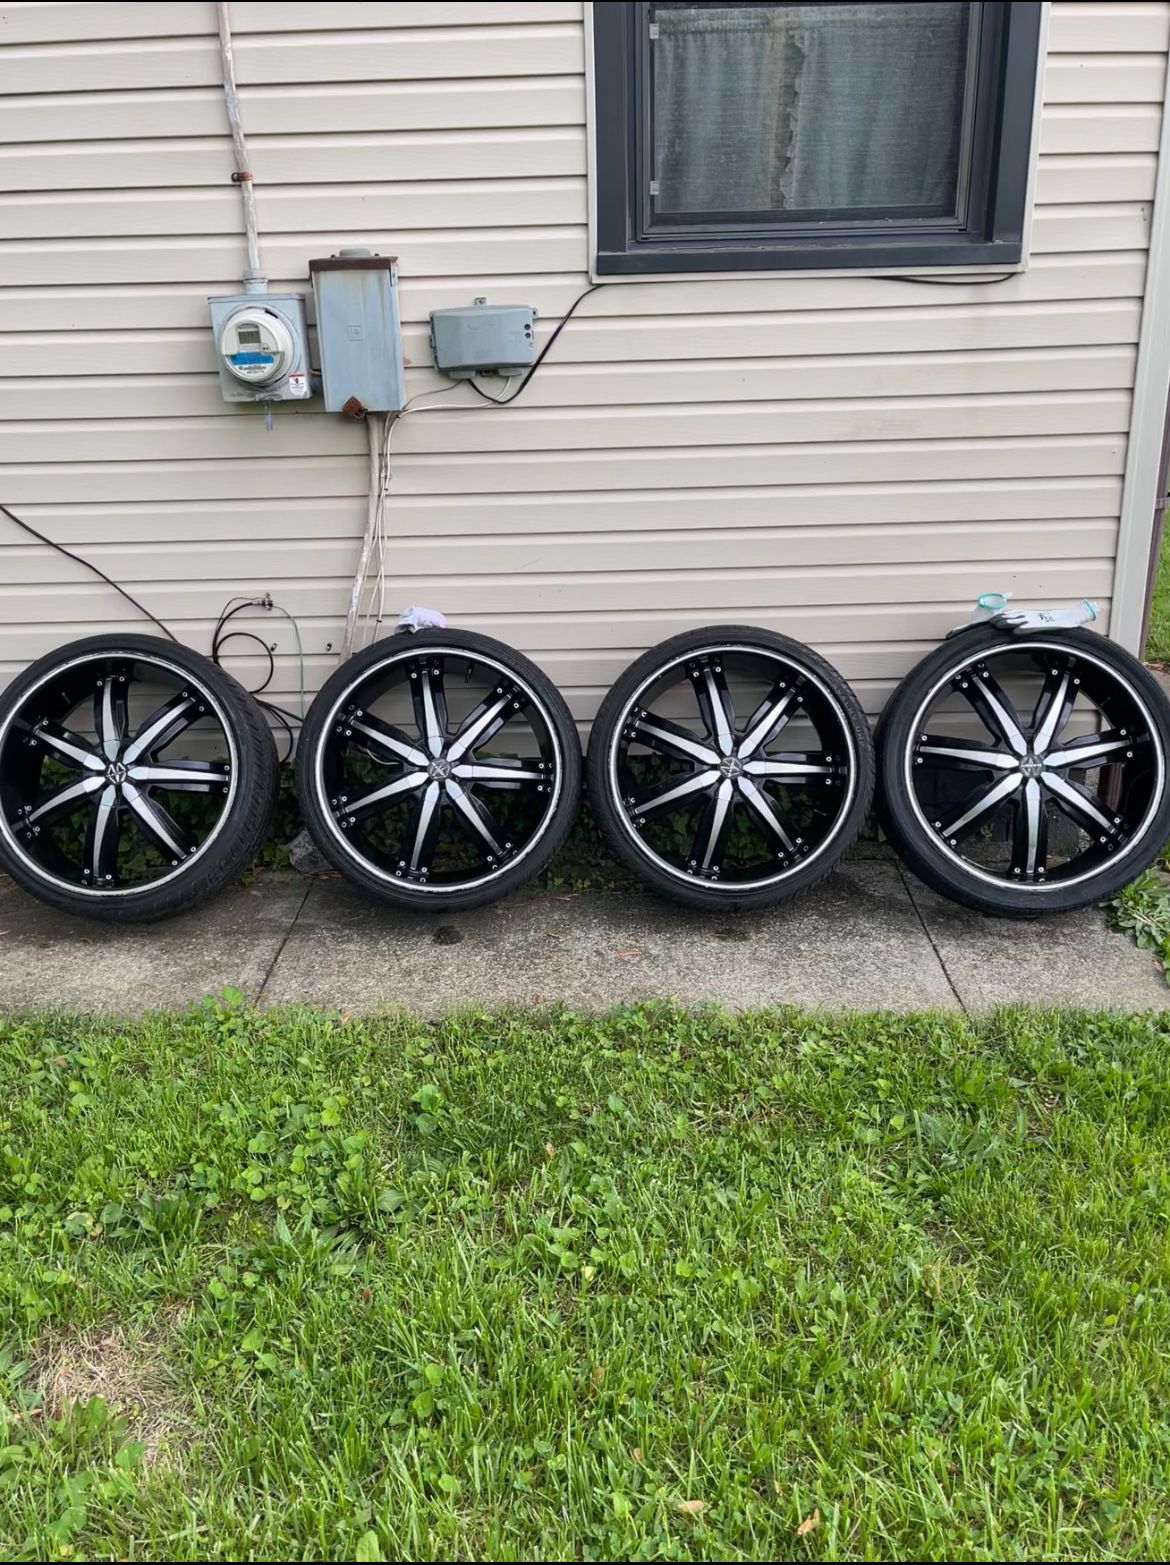 22 Inch Wheels